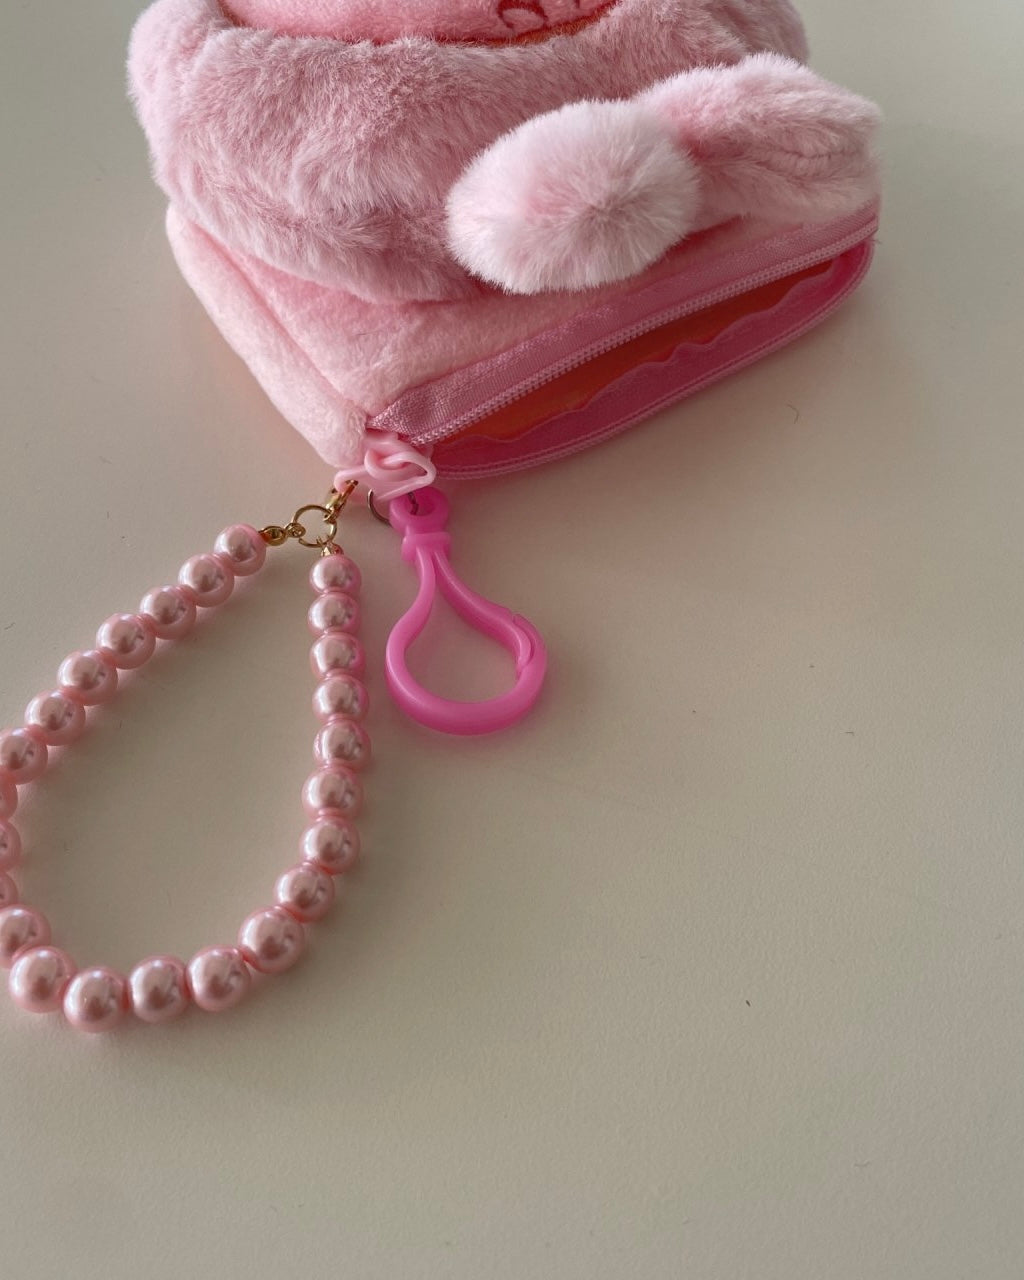 Pink Rabbit Pouch Keychain